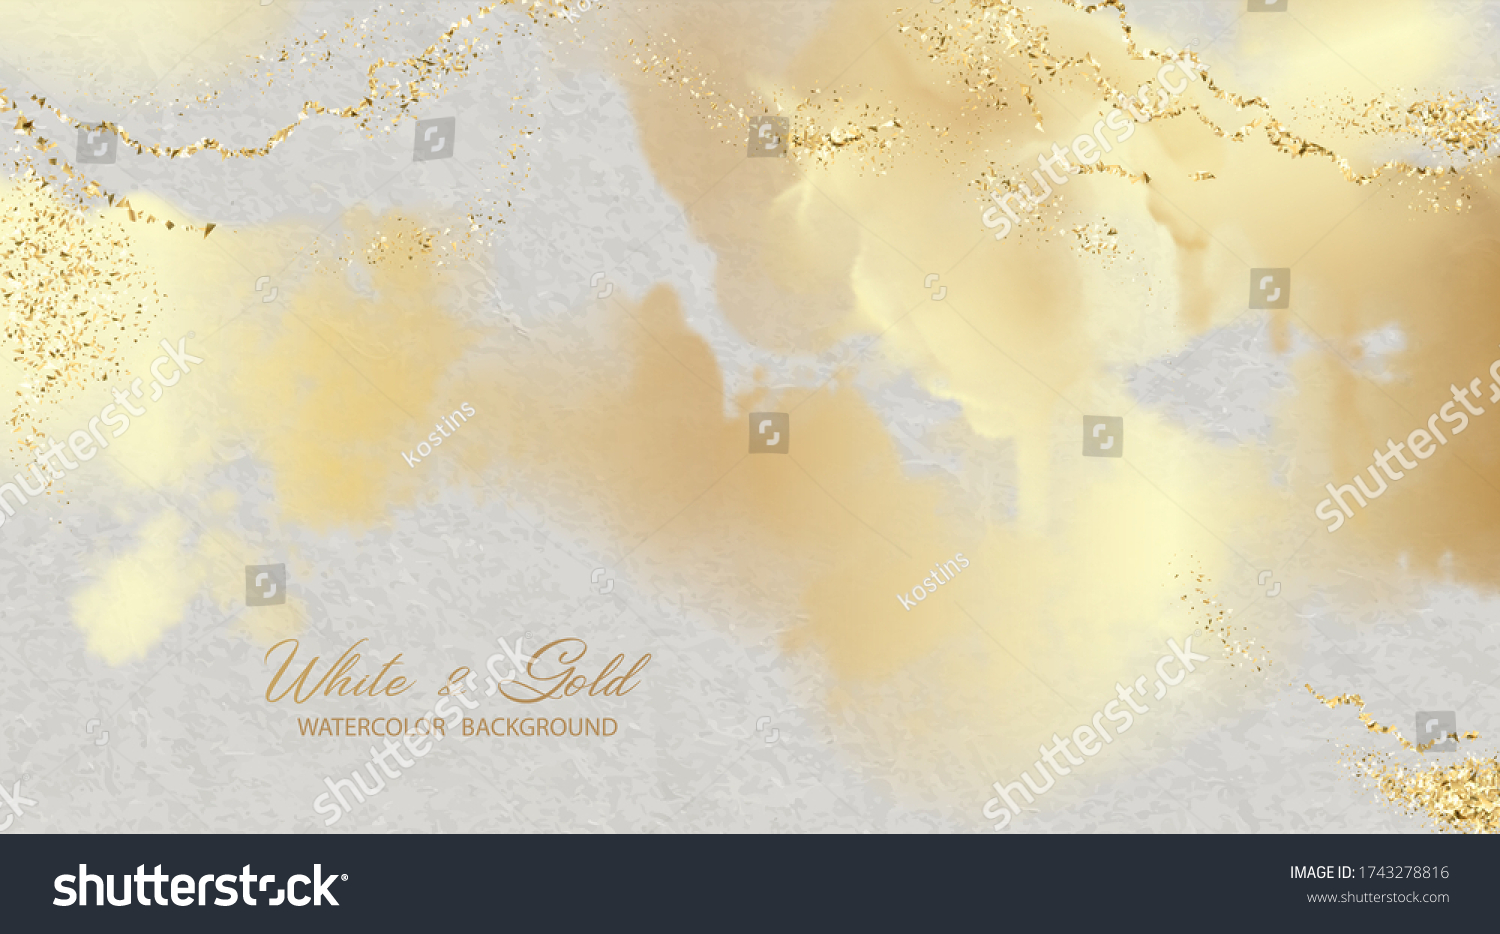 223,667 Gold paint splash background Images, Stock Photos & Vectors ...